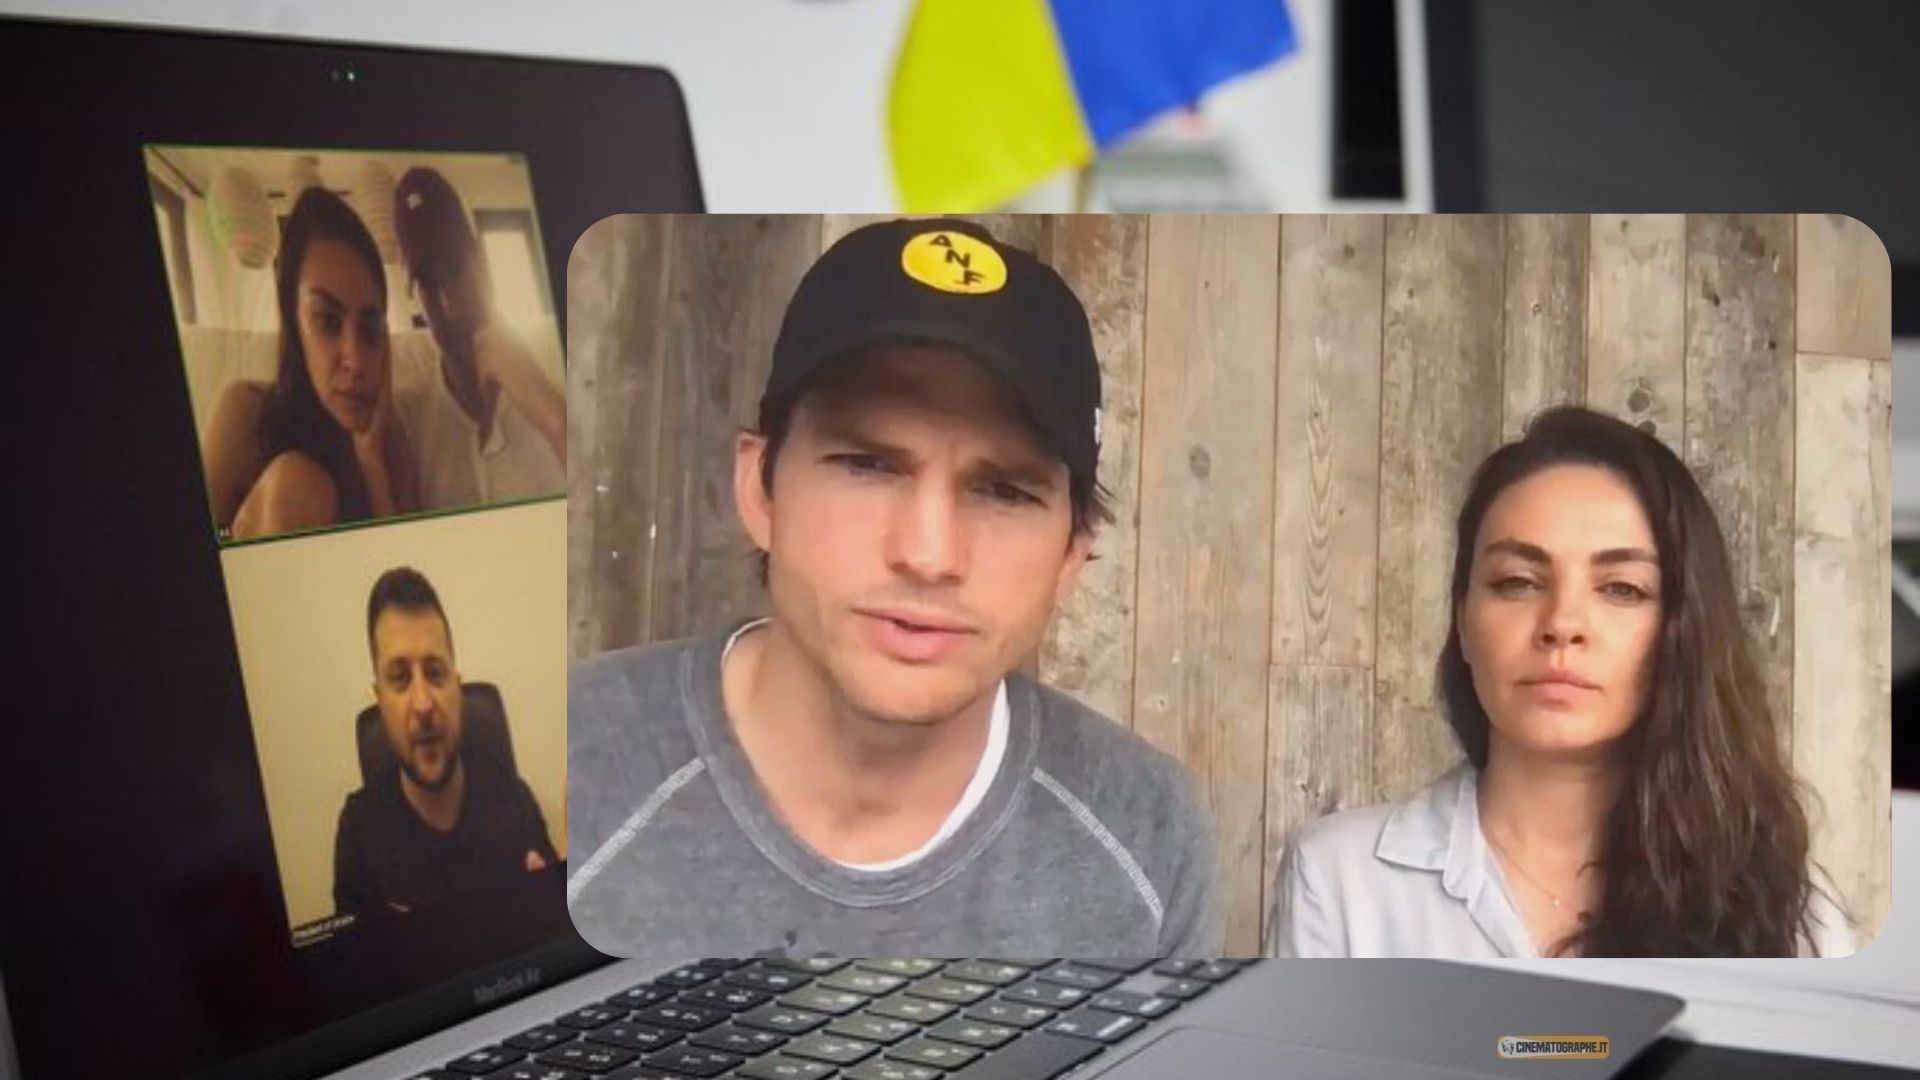 Ucraina, Mila Kunis e Ashton Kutcher in videochiamata con Zelensky: “Impressionato dalla loro determinazione”